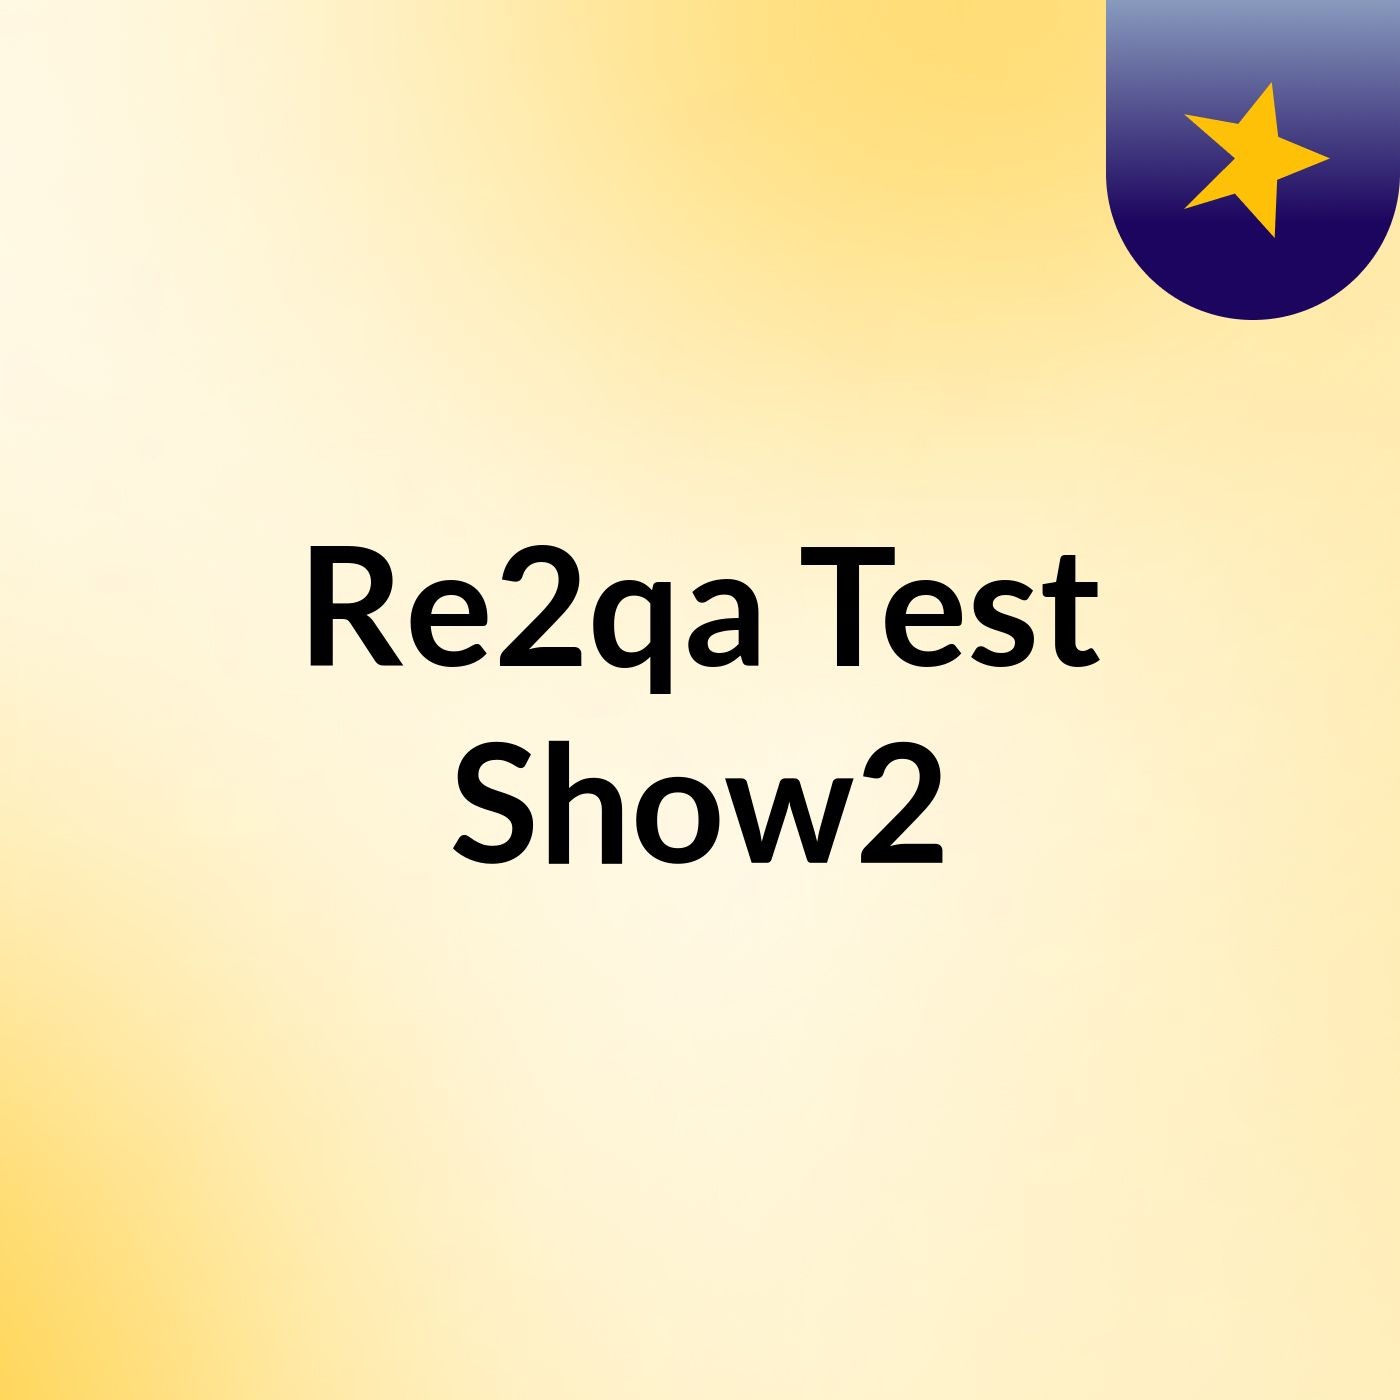 Re2qa Test Show2